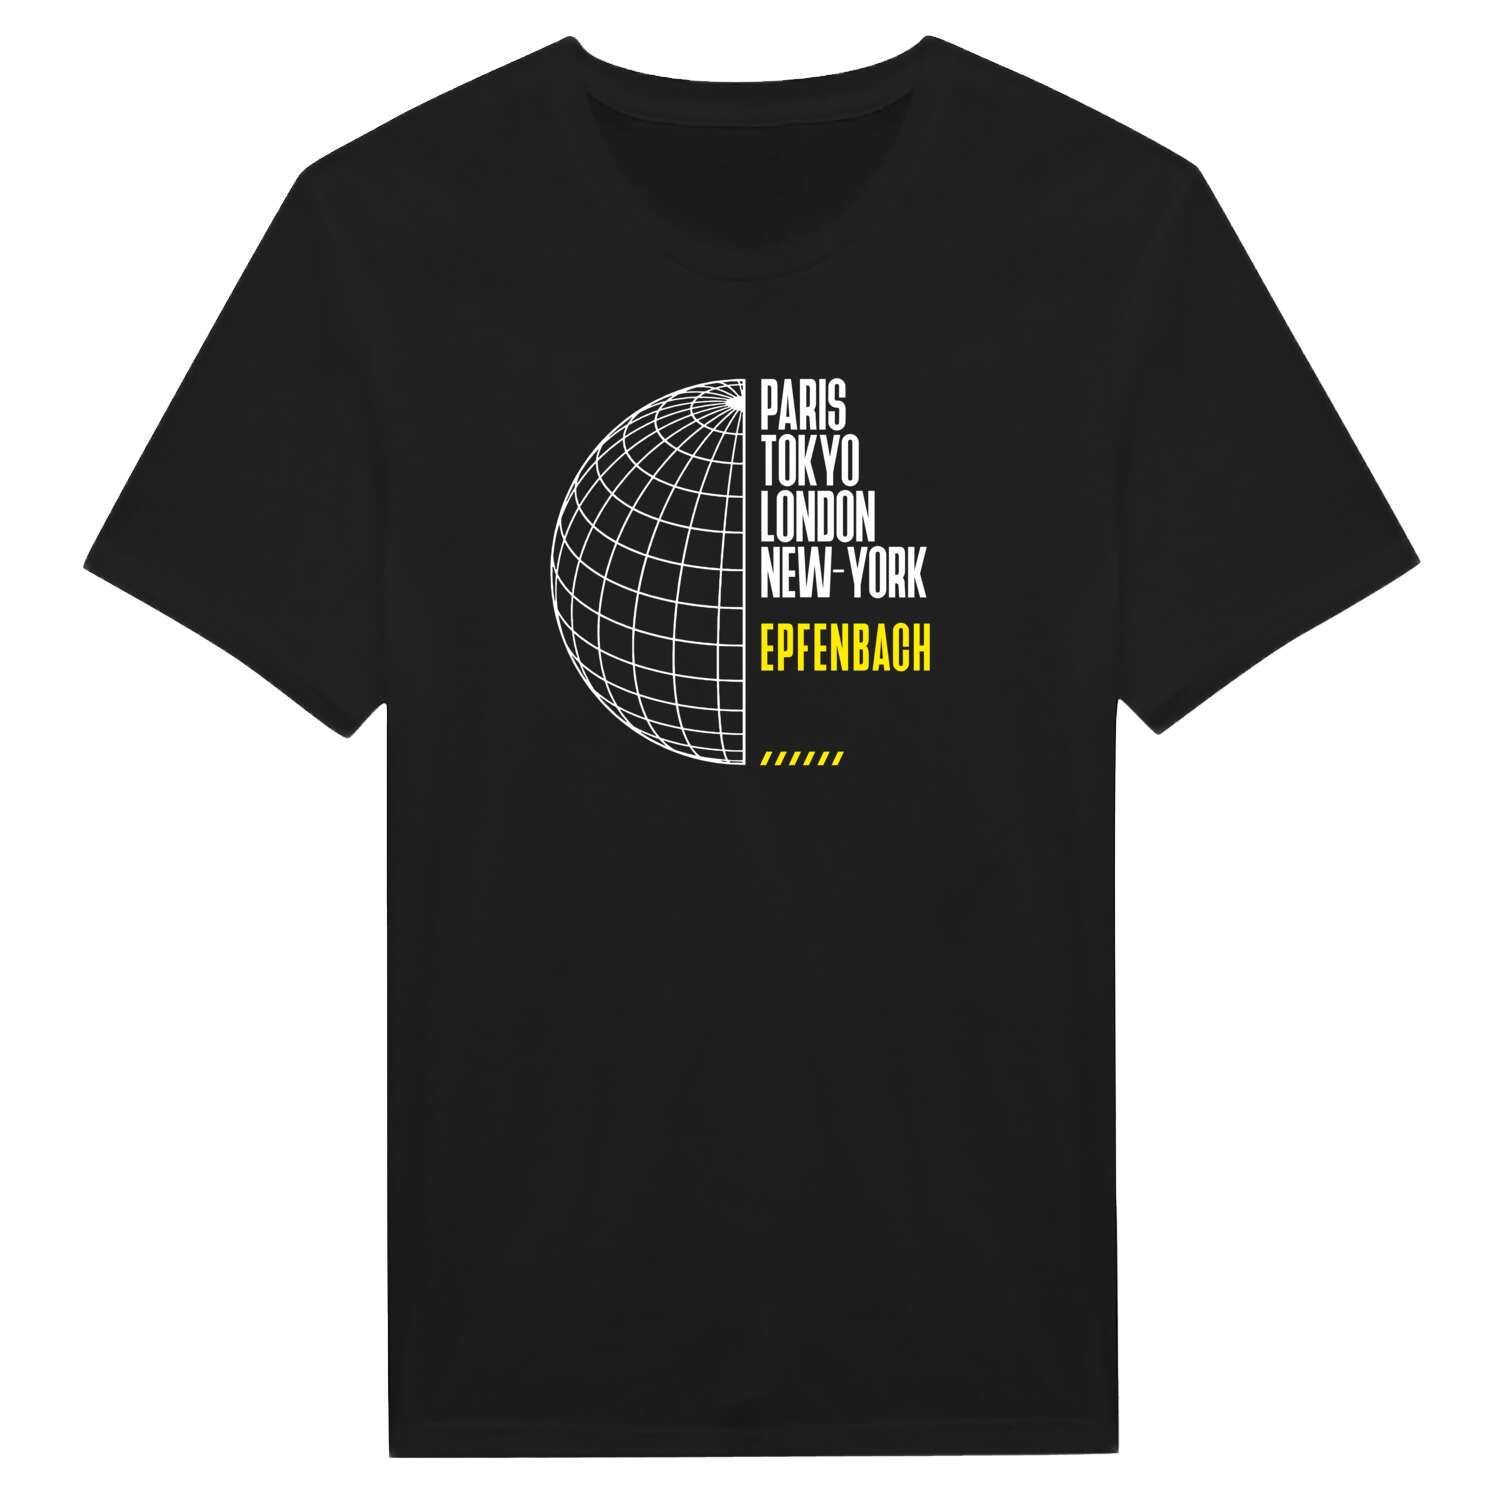 Epfenbach T-Shirt »Paris Tokyo London«